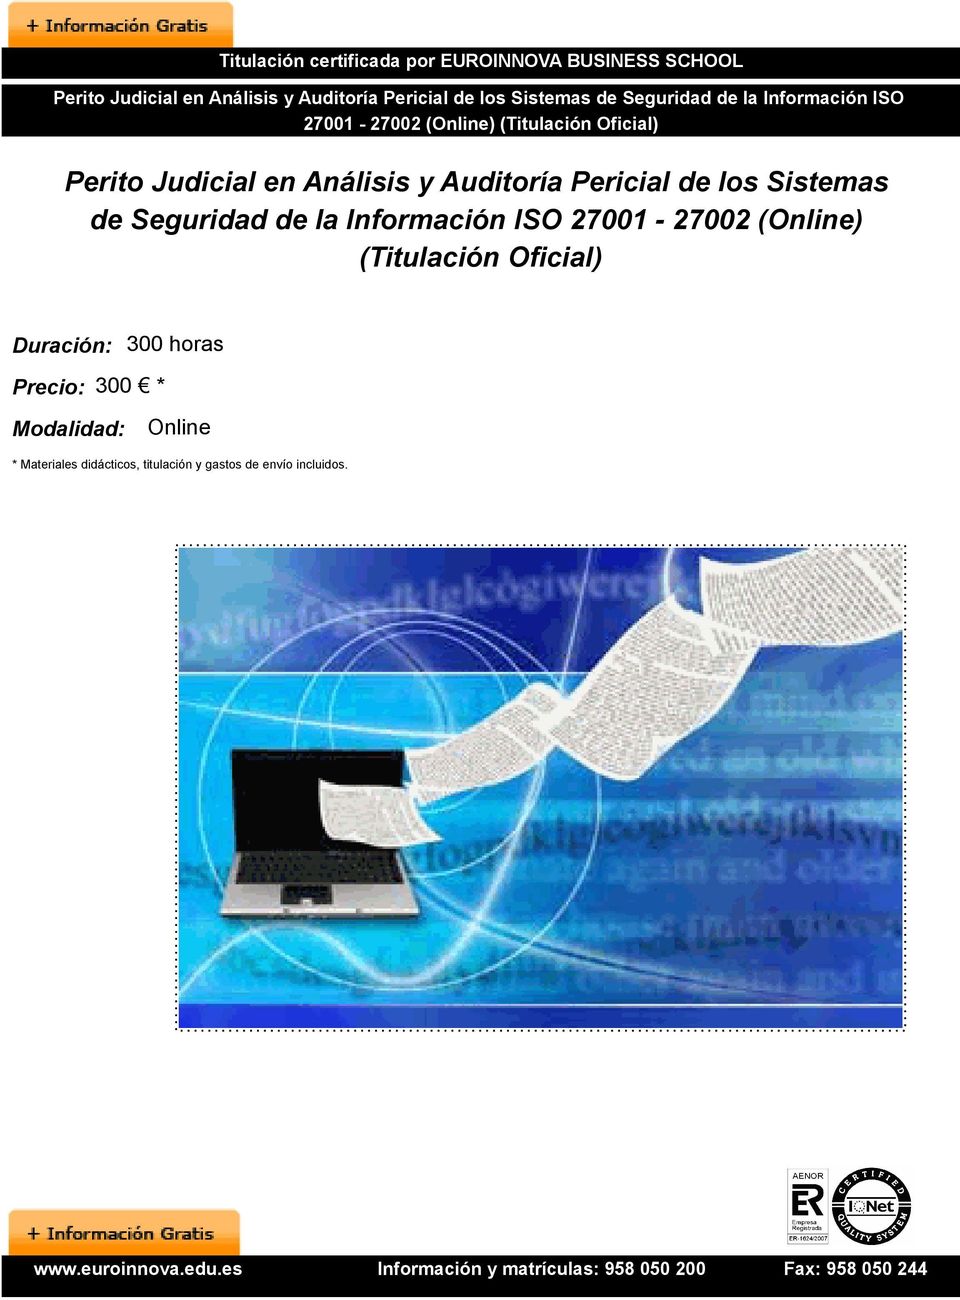 los Sistemas de Seguridad de la Información ISO 27001-27002 (Online) (Titulación Oficial) Duración: